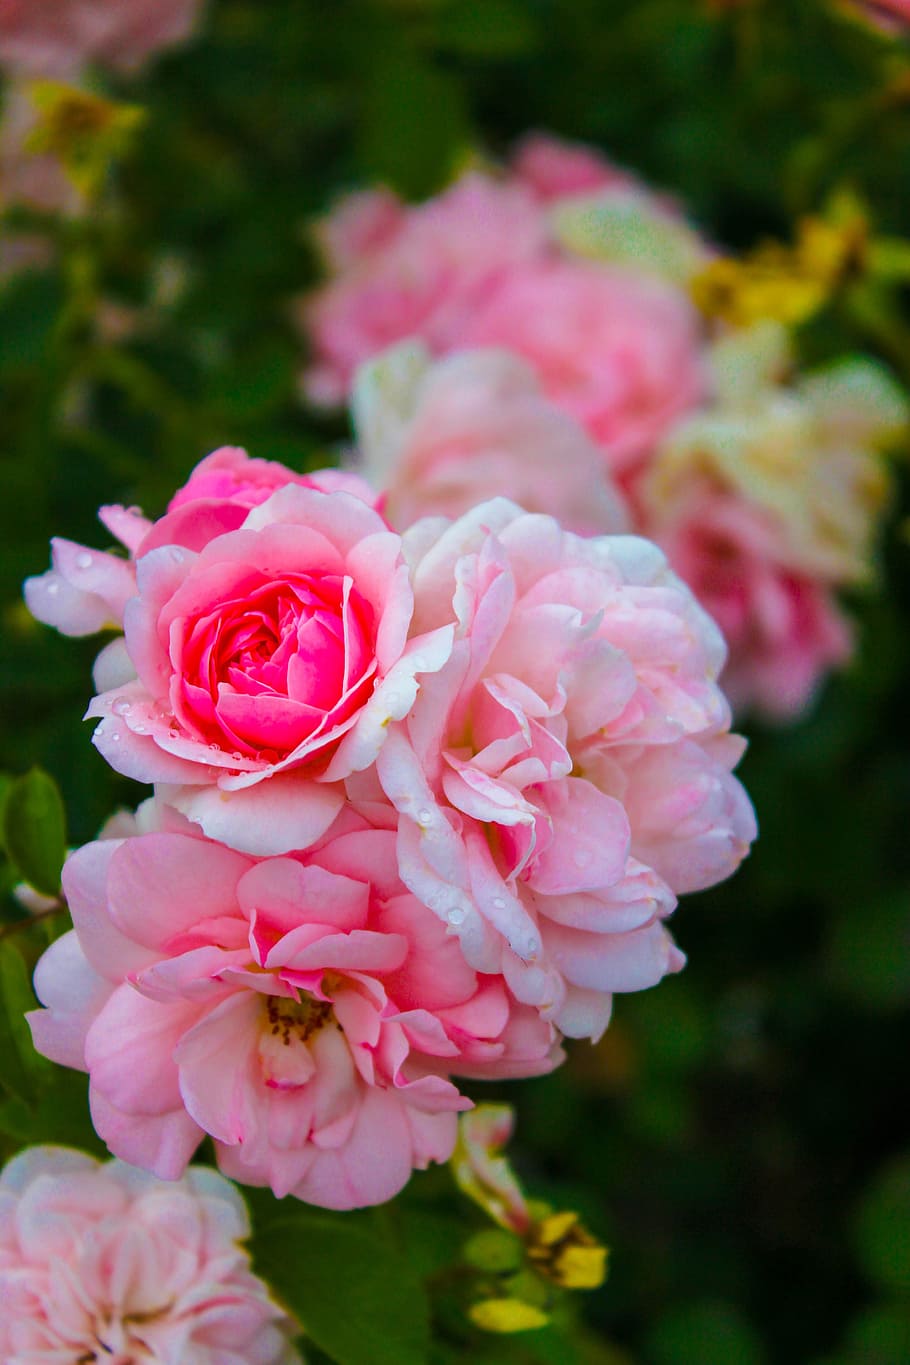 Rose, Pink, Flowers, Plant, rose, pink, summer, garden, nature, petals, bloom